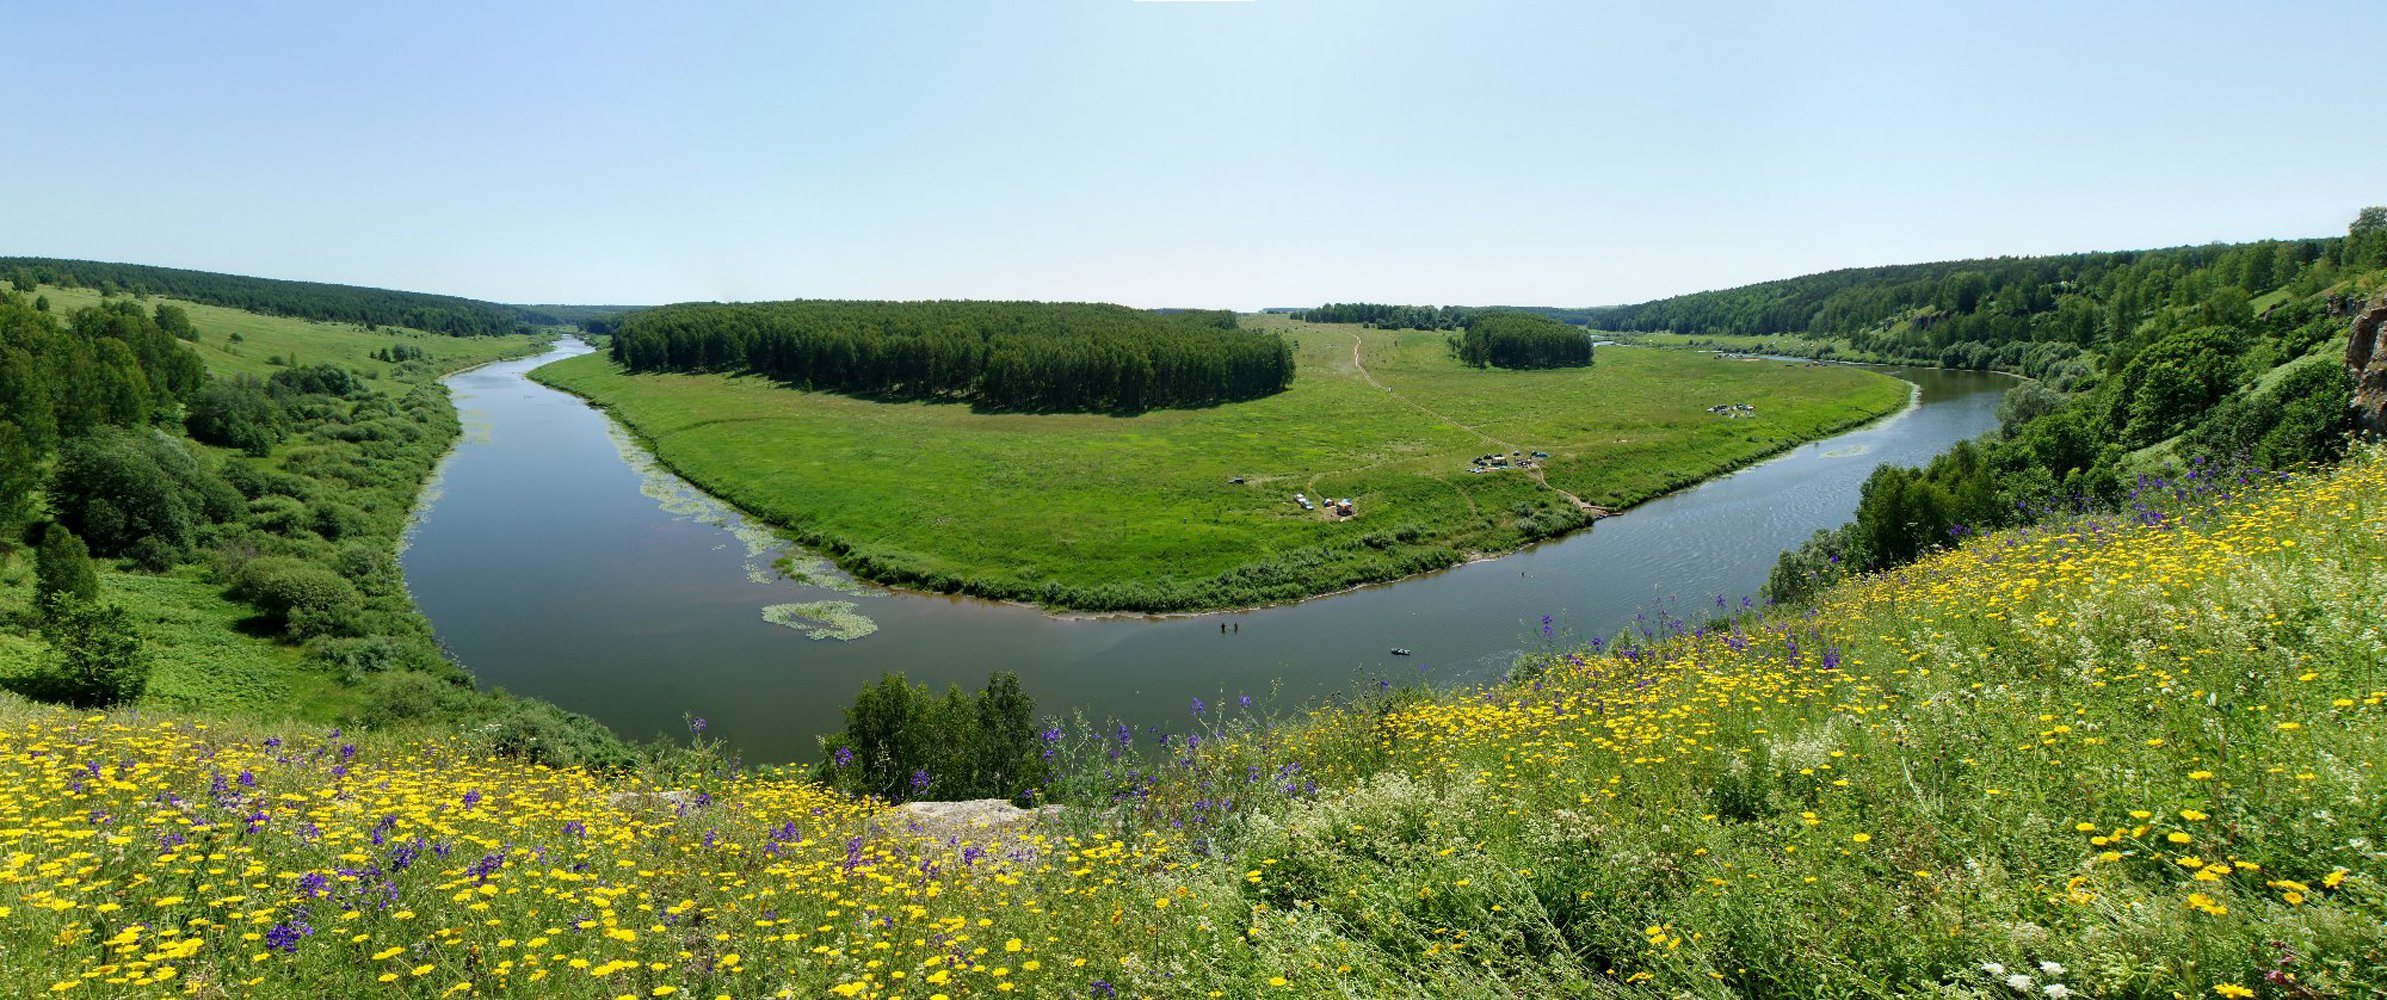 Река Немда летом